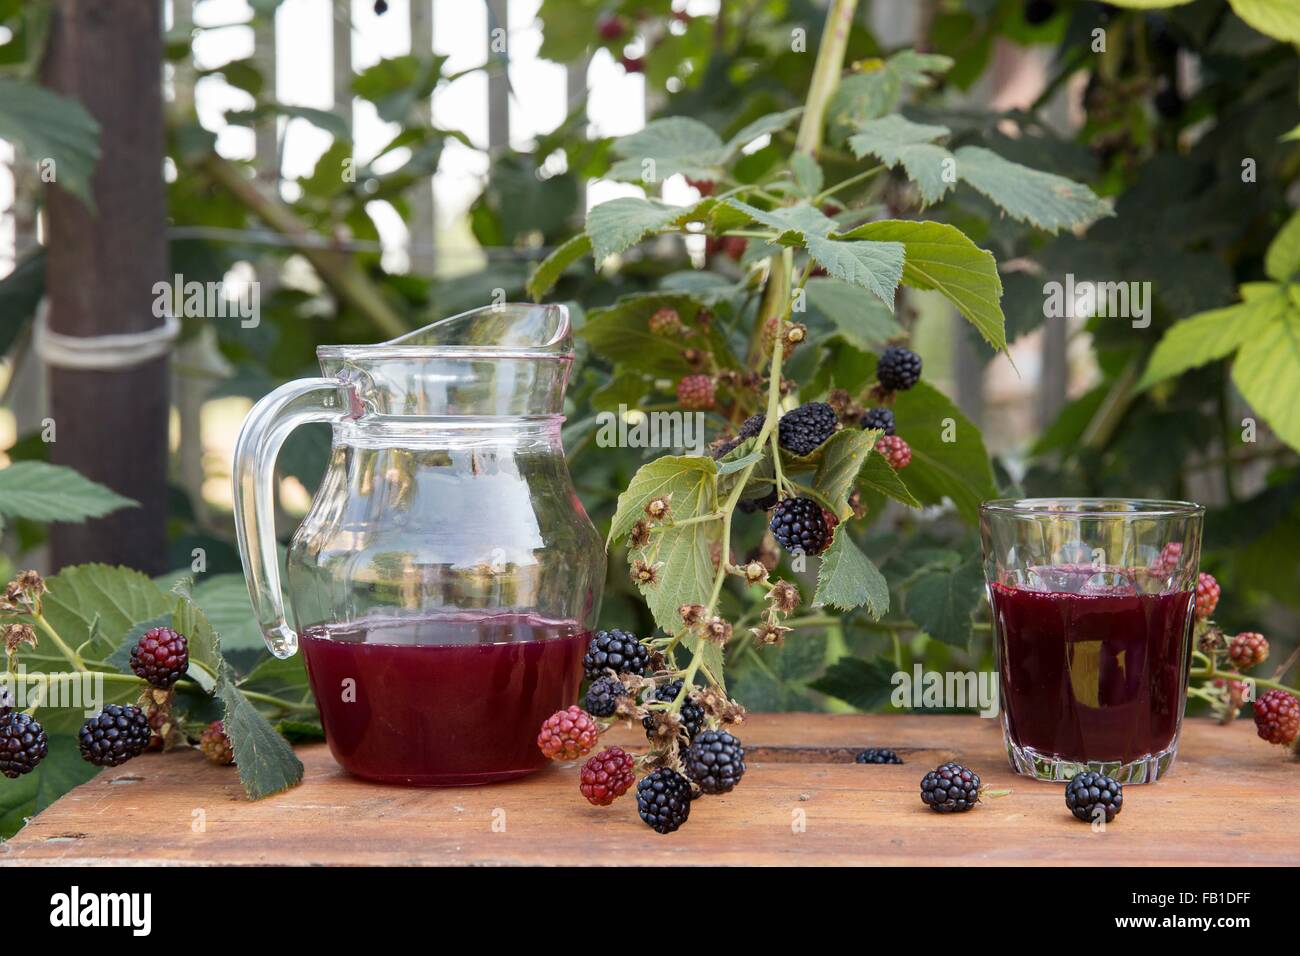 Pichet de jus de fruits frais et un verre de jus frais, sur la table de jardin, à côté de mûriers Banque D'Images